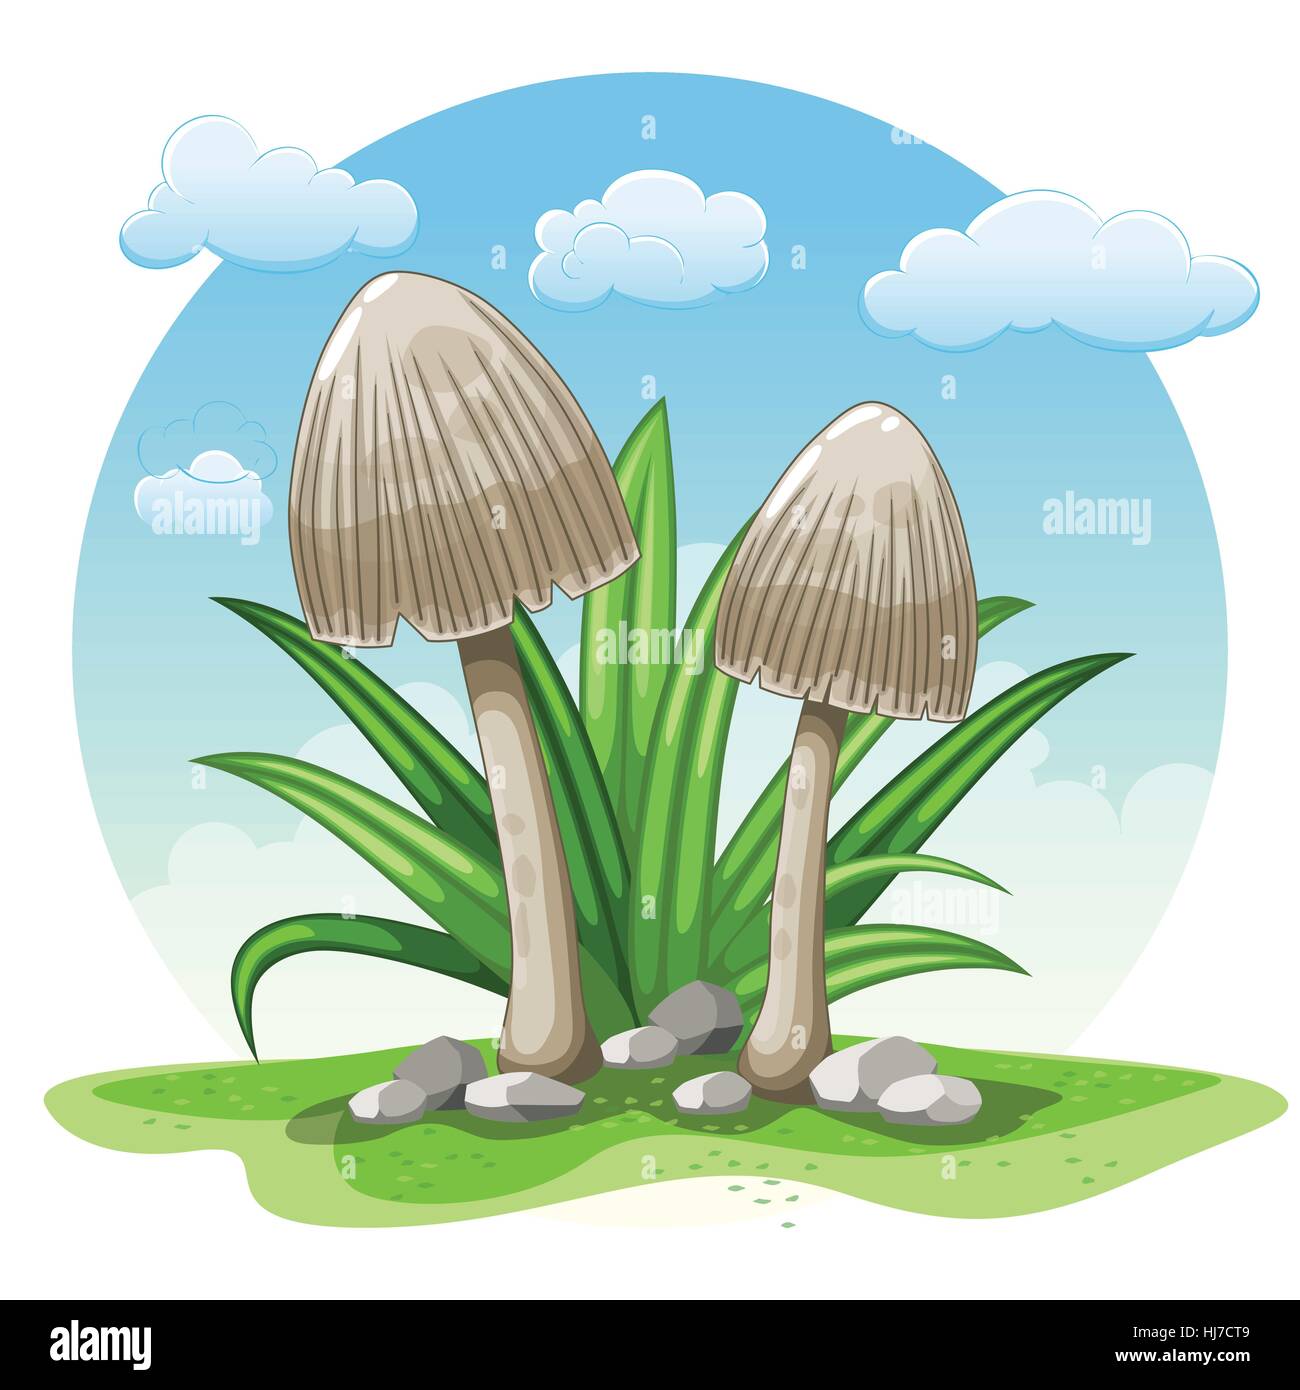 Illustrazione di cartoon funghi contro uno sfondo bianco Illustrazione Vettoriale